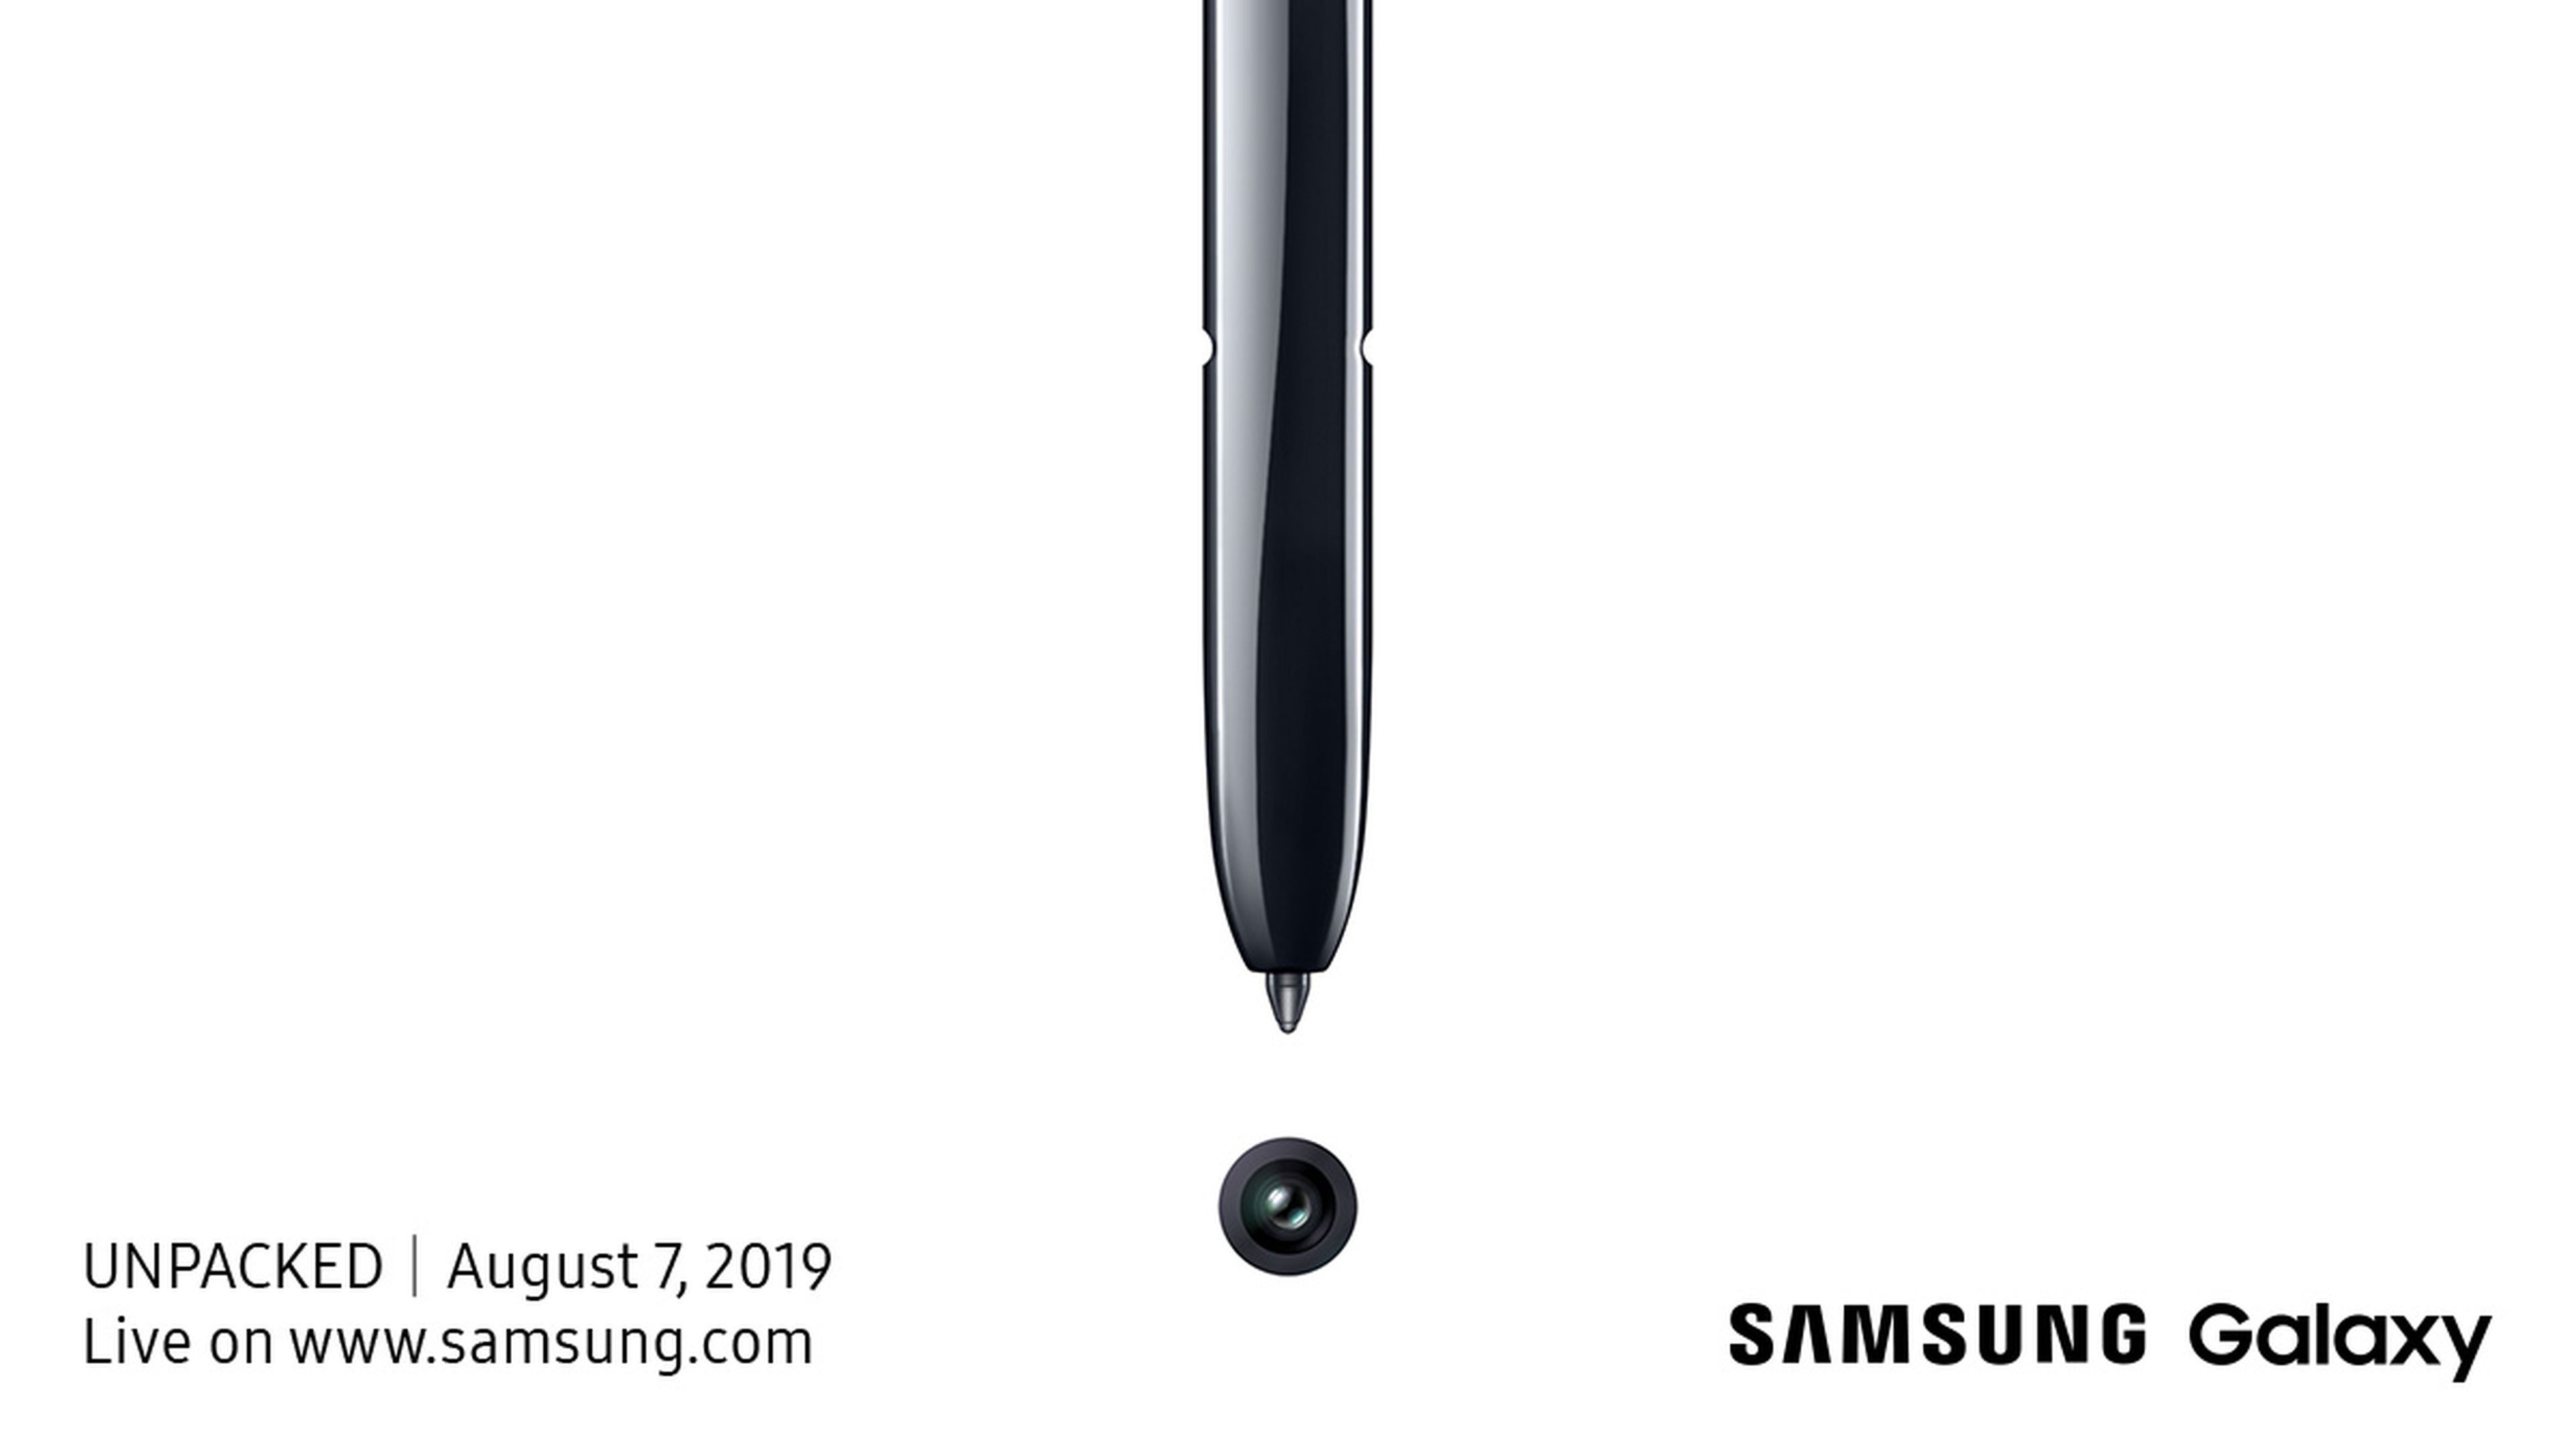 Imagen presntada por Samsung para dar a conocer su evento Samsung Galaxy UNPACKED 2019.